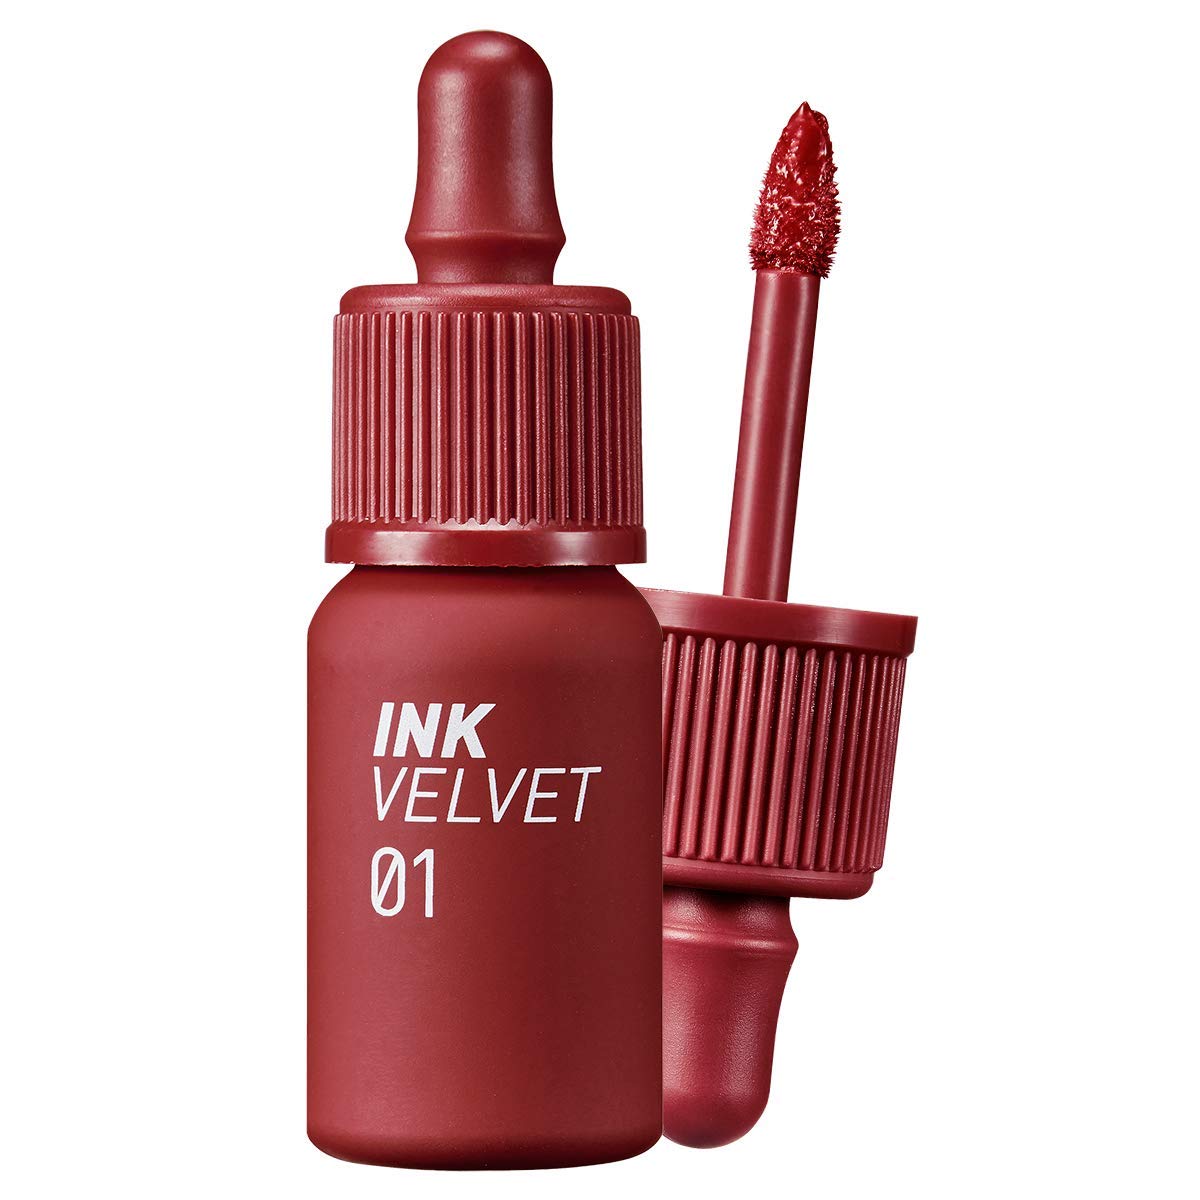 Peripera Ink the Velvet Lip Tint im Farbton 01 auf weißem Hintergrund